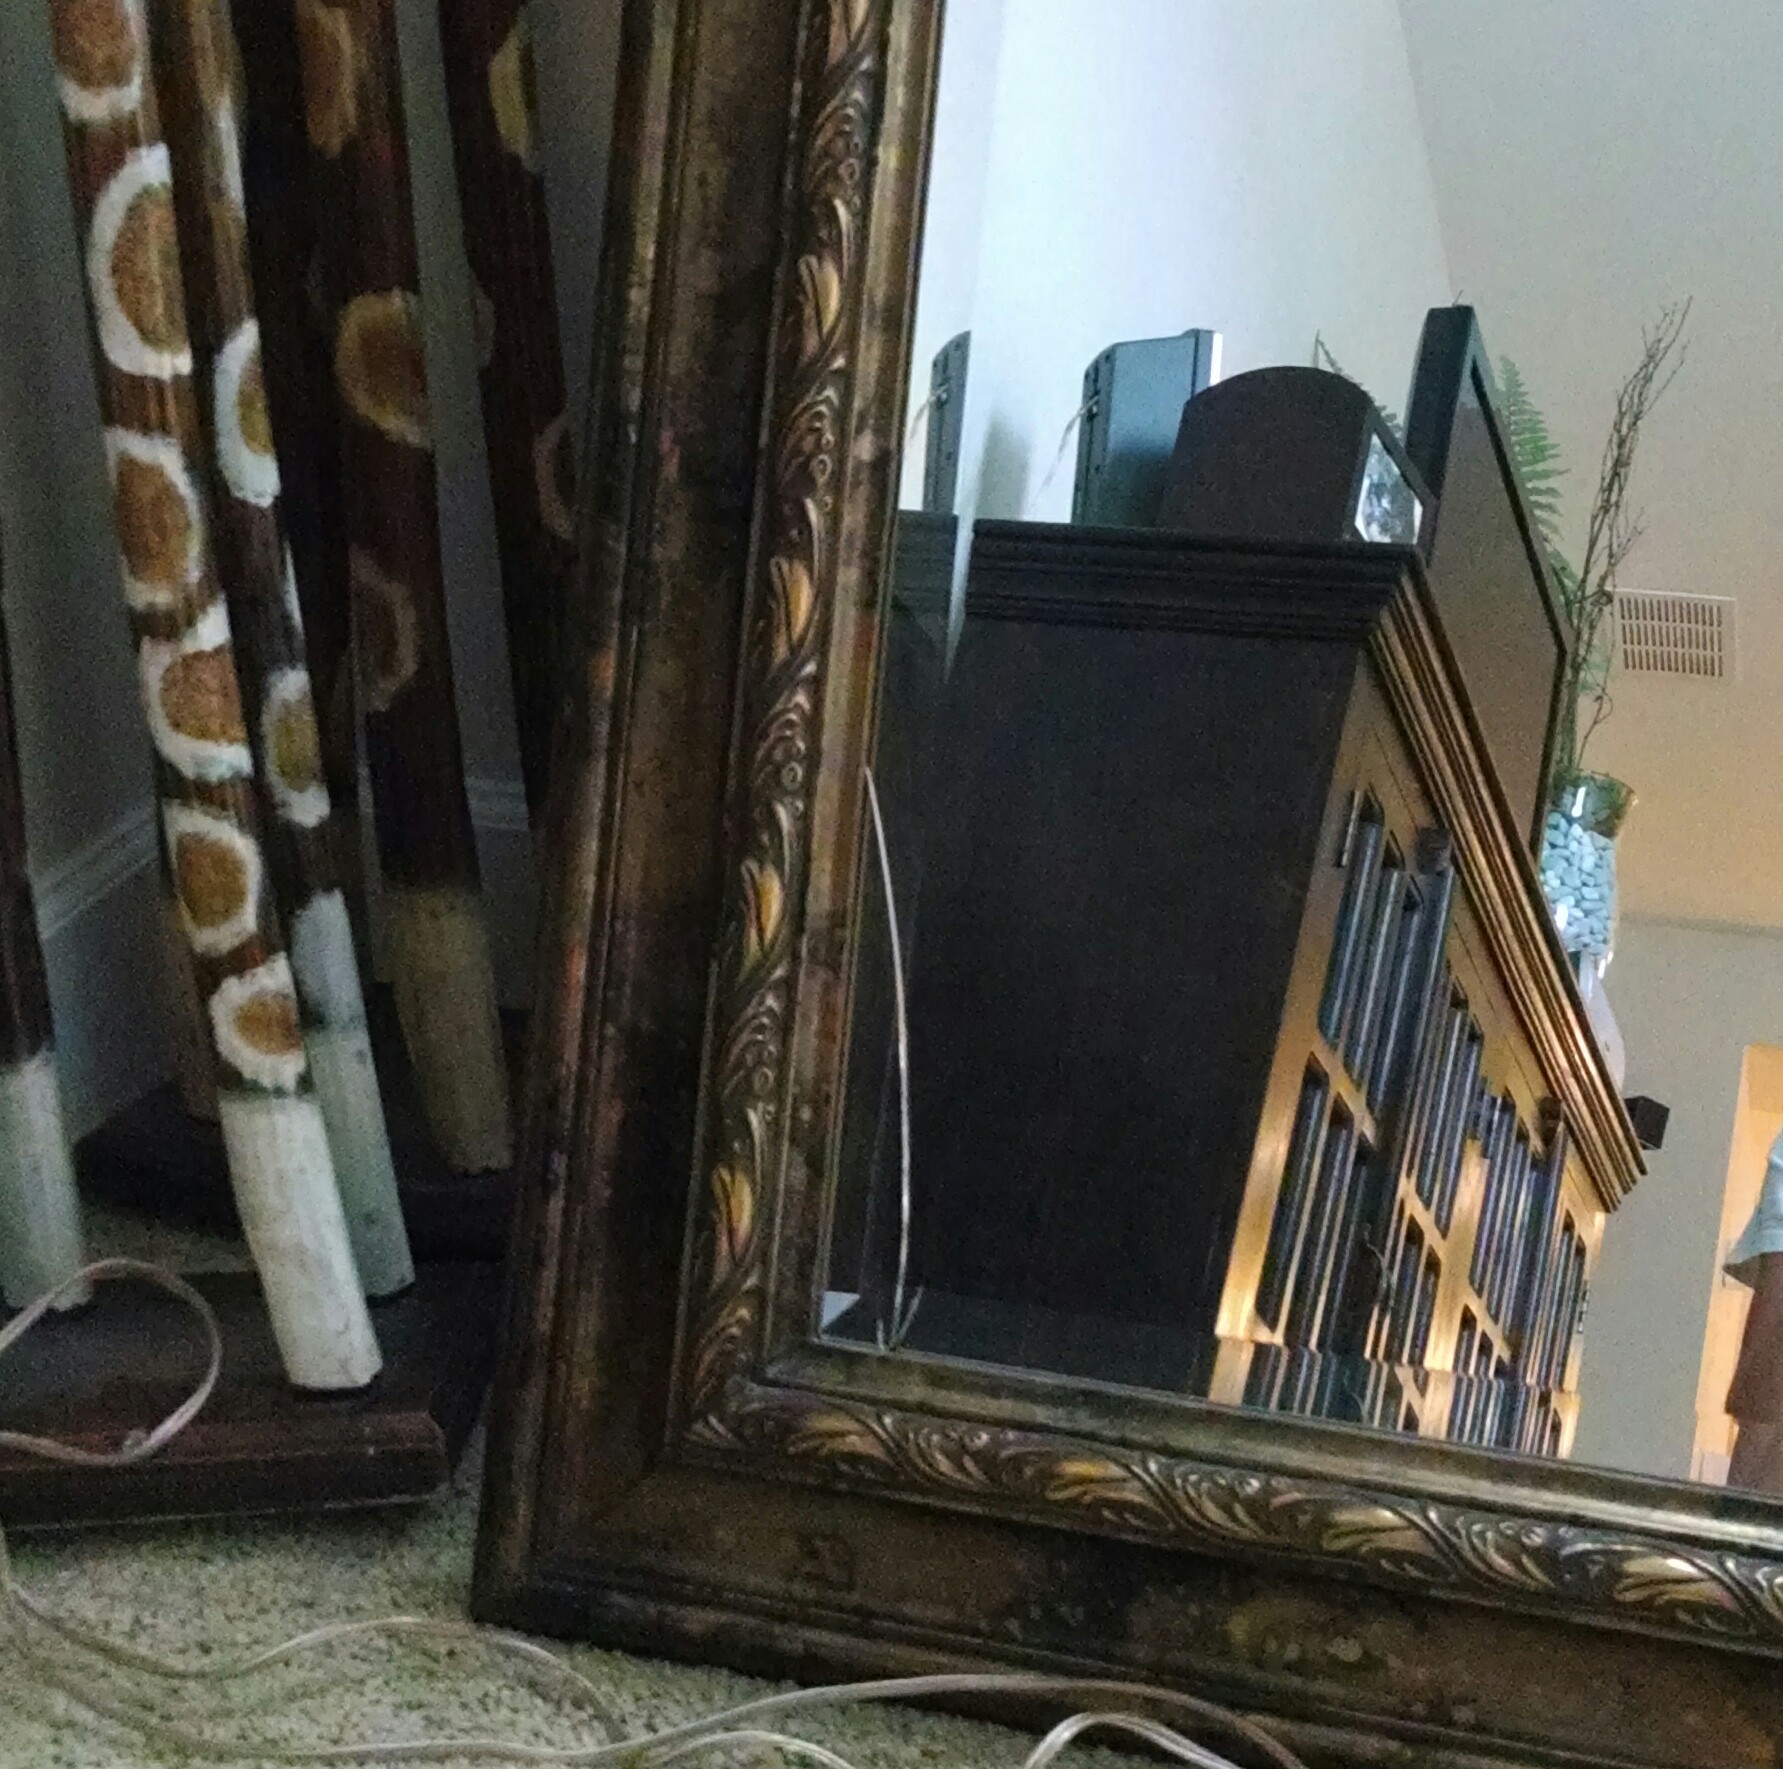 Broken framed mirror